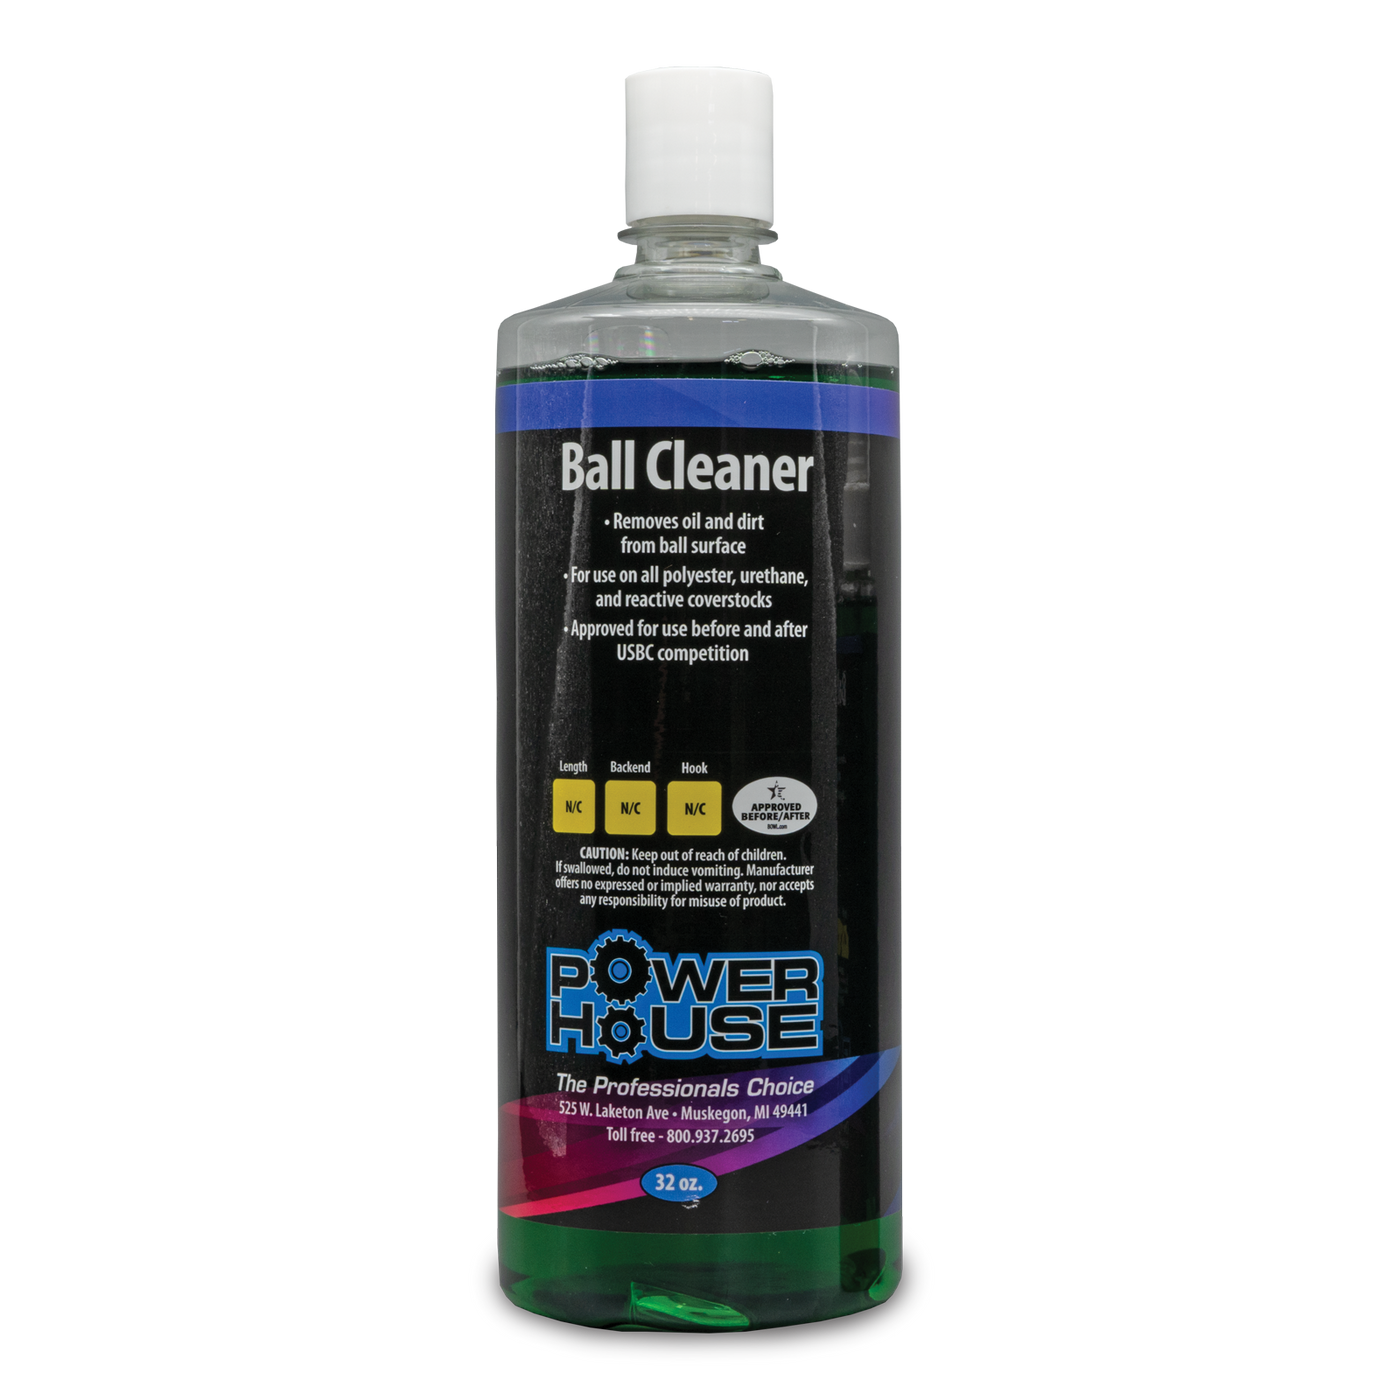 Ball Cleaner 32 oz. bottle